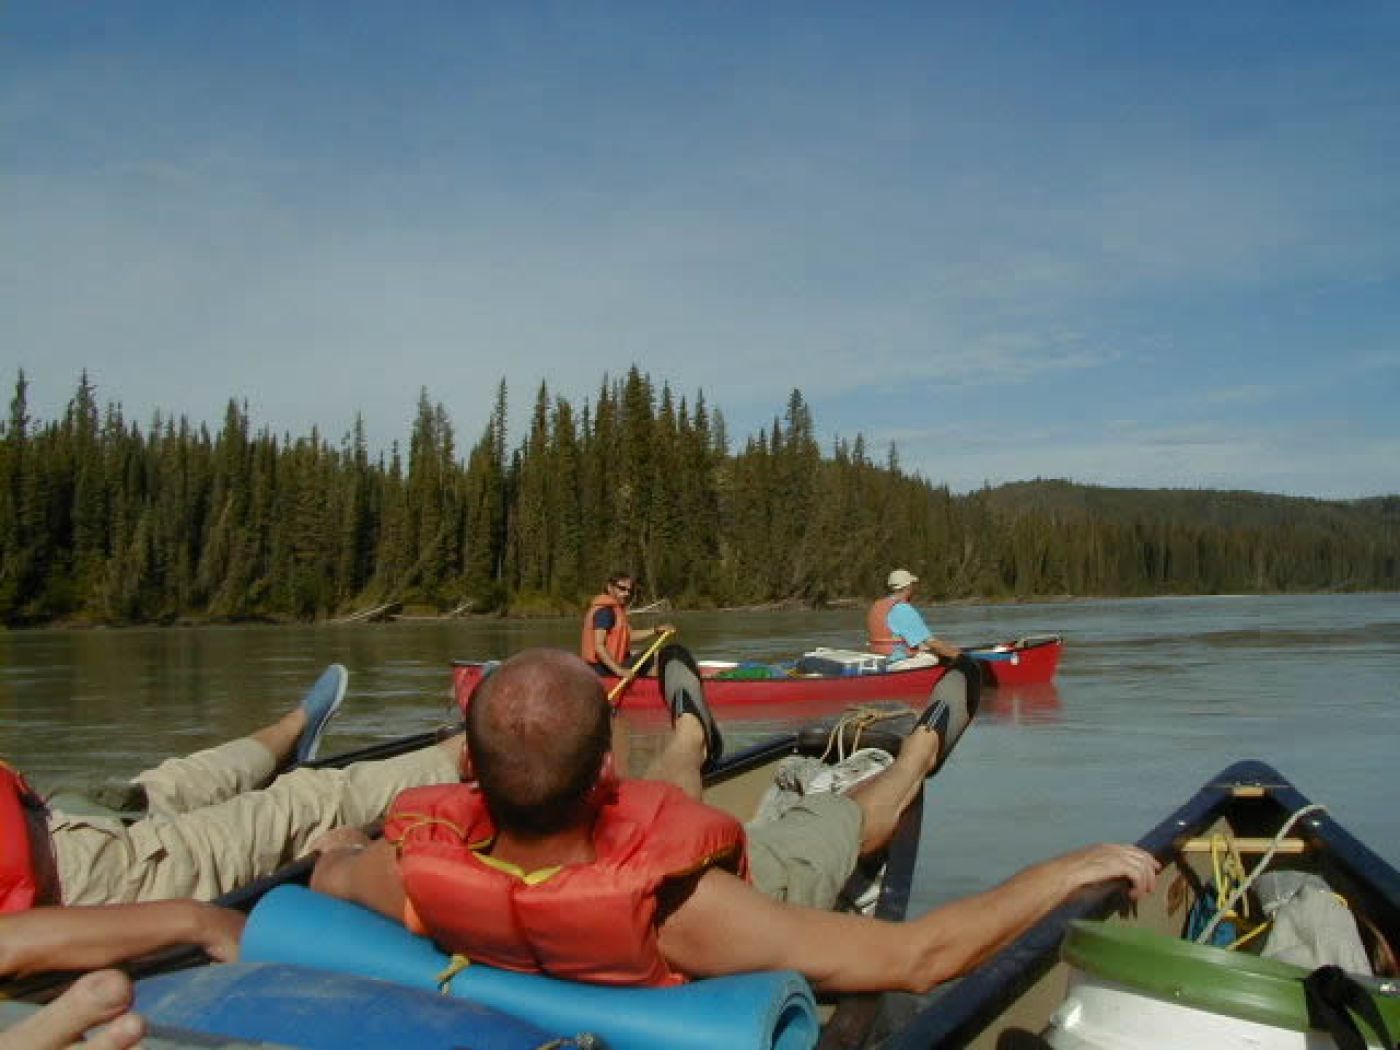 canoeing, floating and relaxing at guided canoe trip in alberta | treiben und entspannen bei der geführten kanutour in alberta, kanada